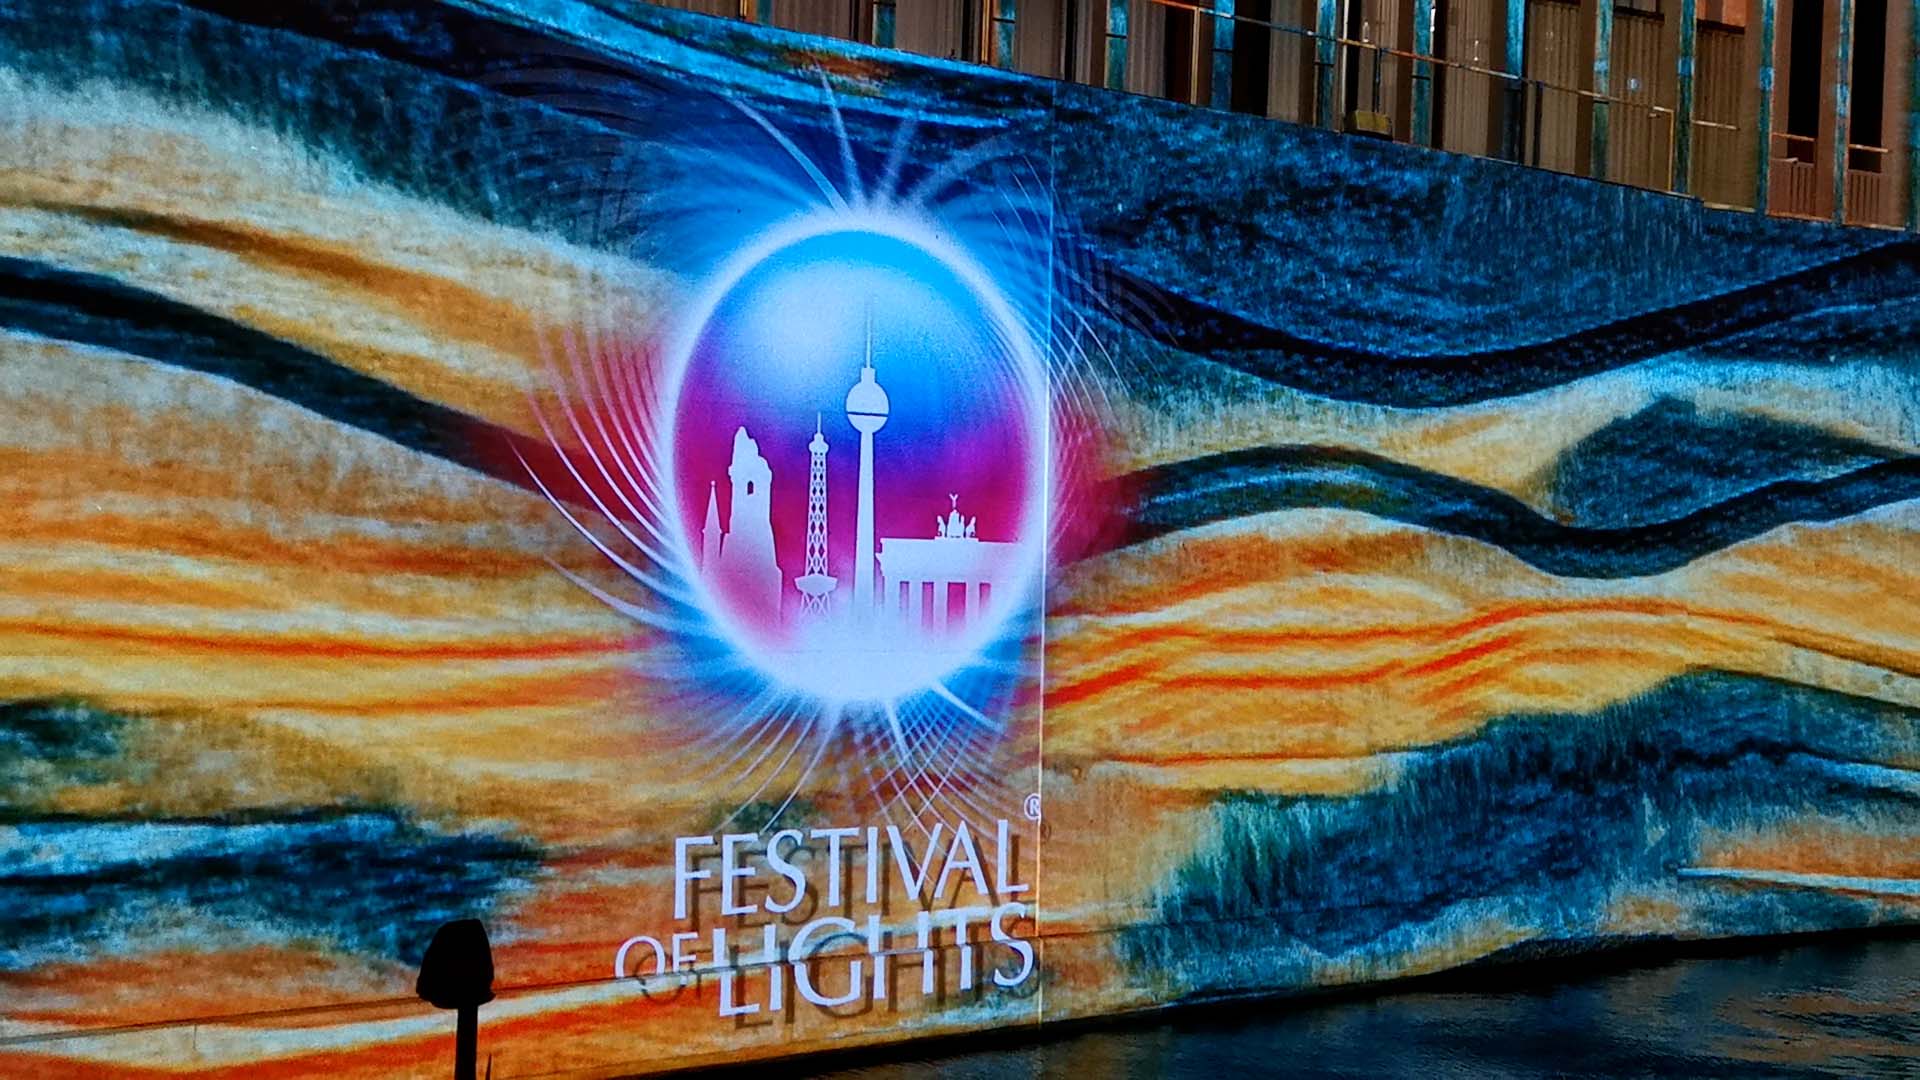 Festival of Lights, James Simon